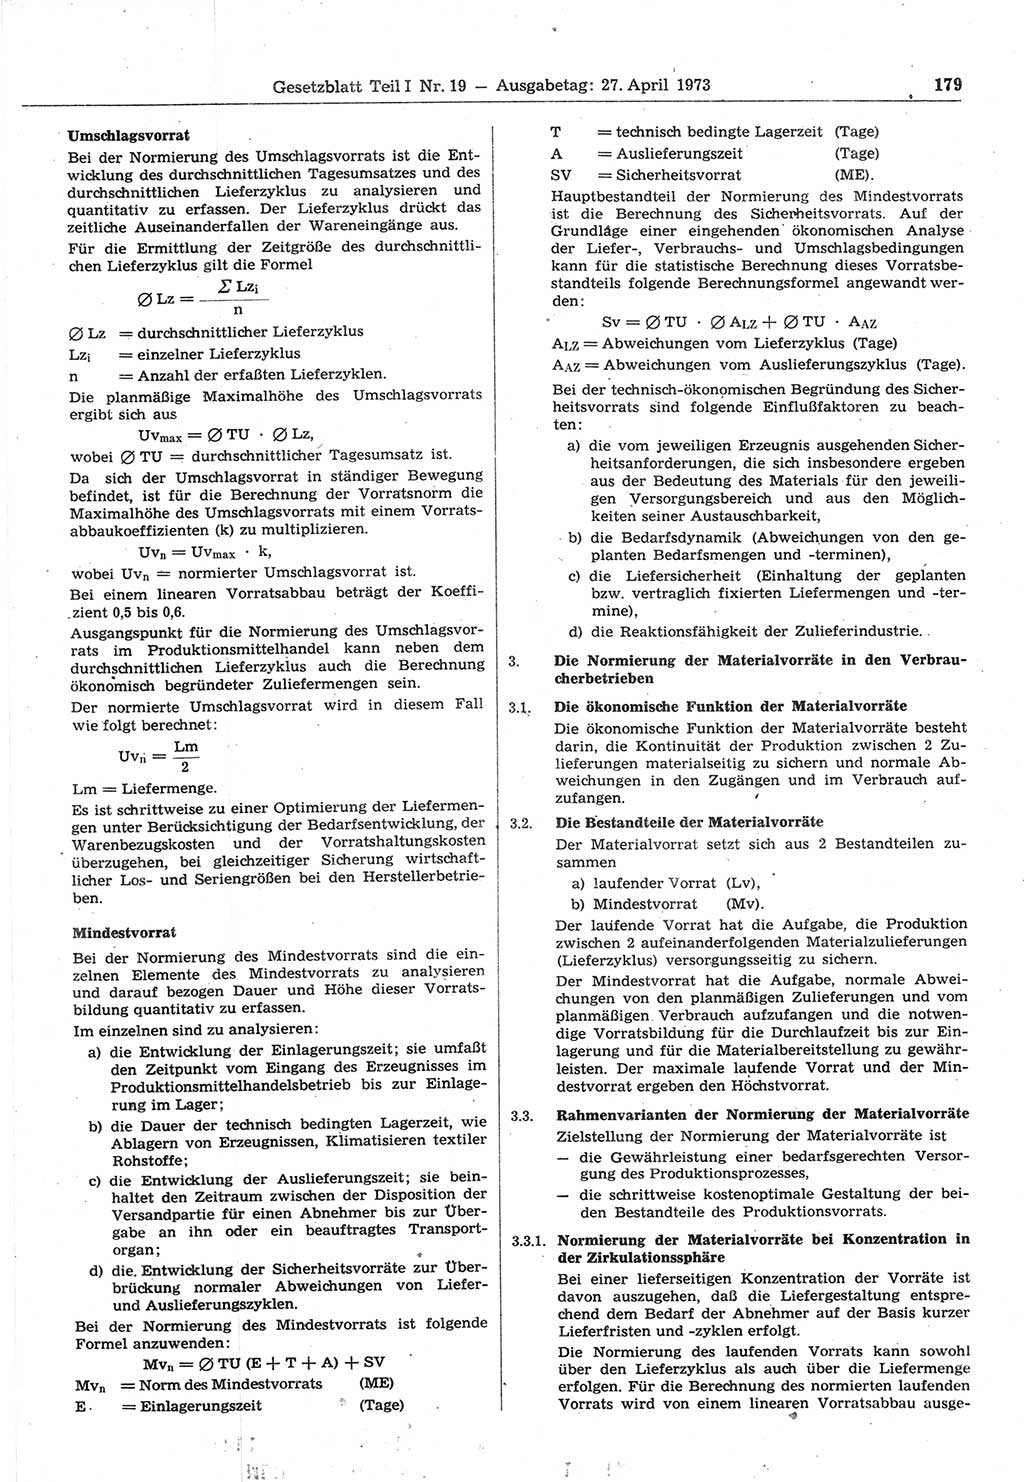 Gesetzblatt (GBl.) der Deutschen Demokratischen Republik (DDR) Teil Ⅰ 1973, Seite 179 (GBl. DDR Ⅰ 1973, S. 179)